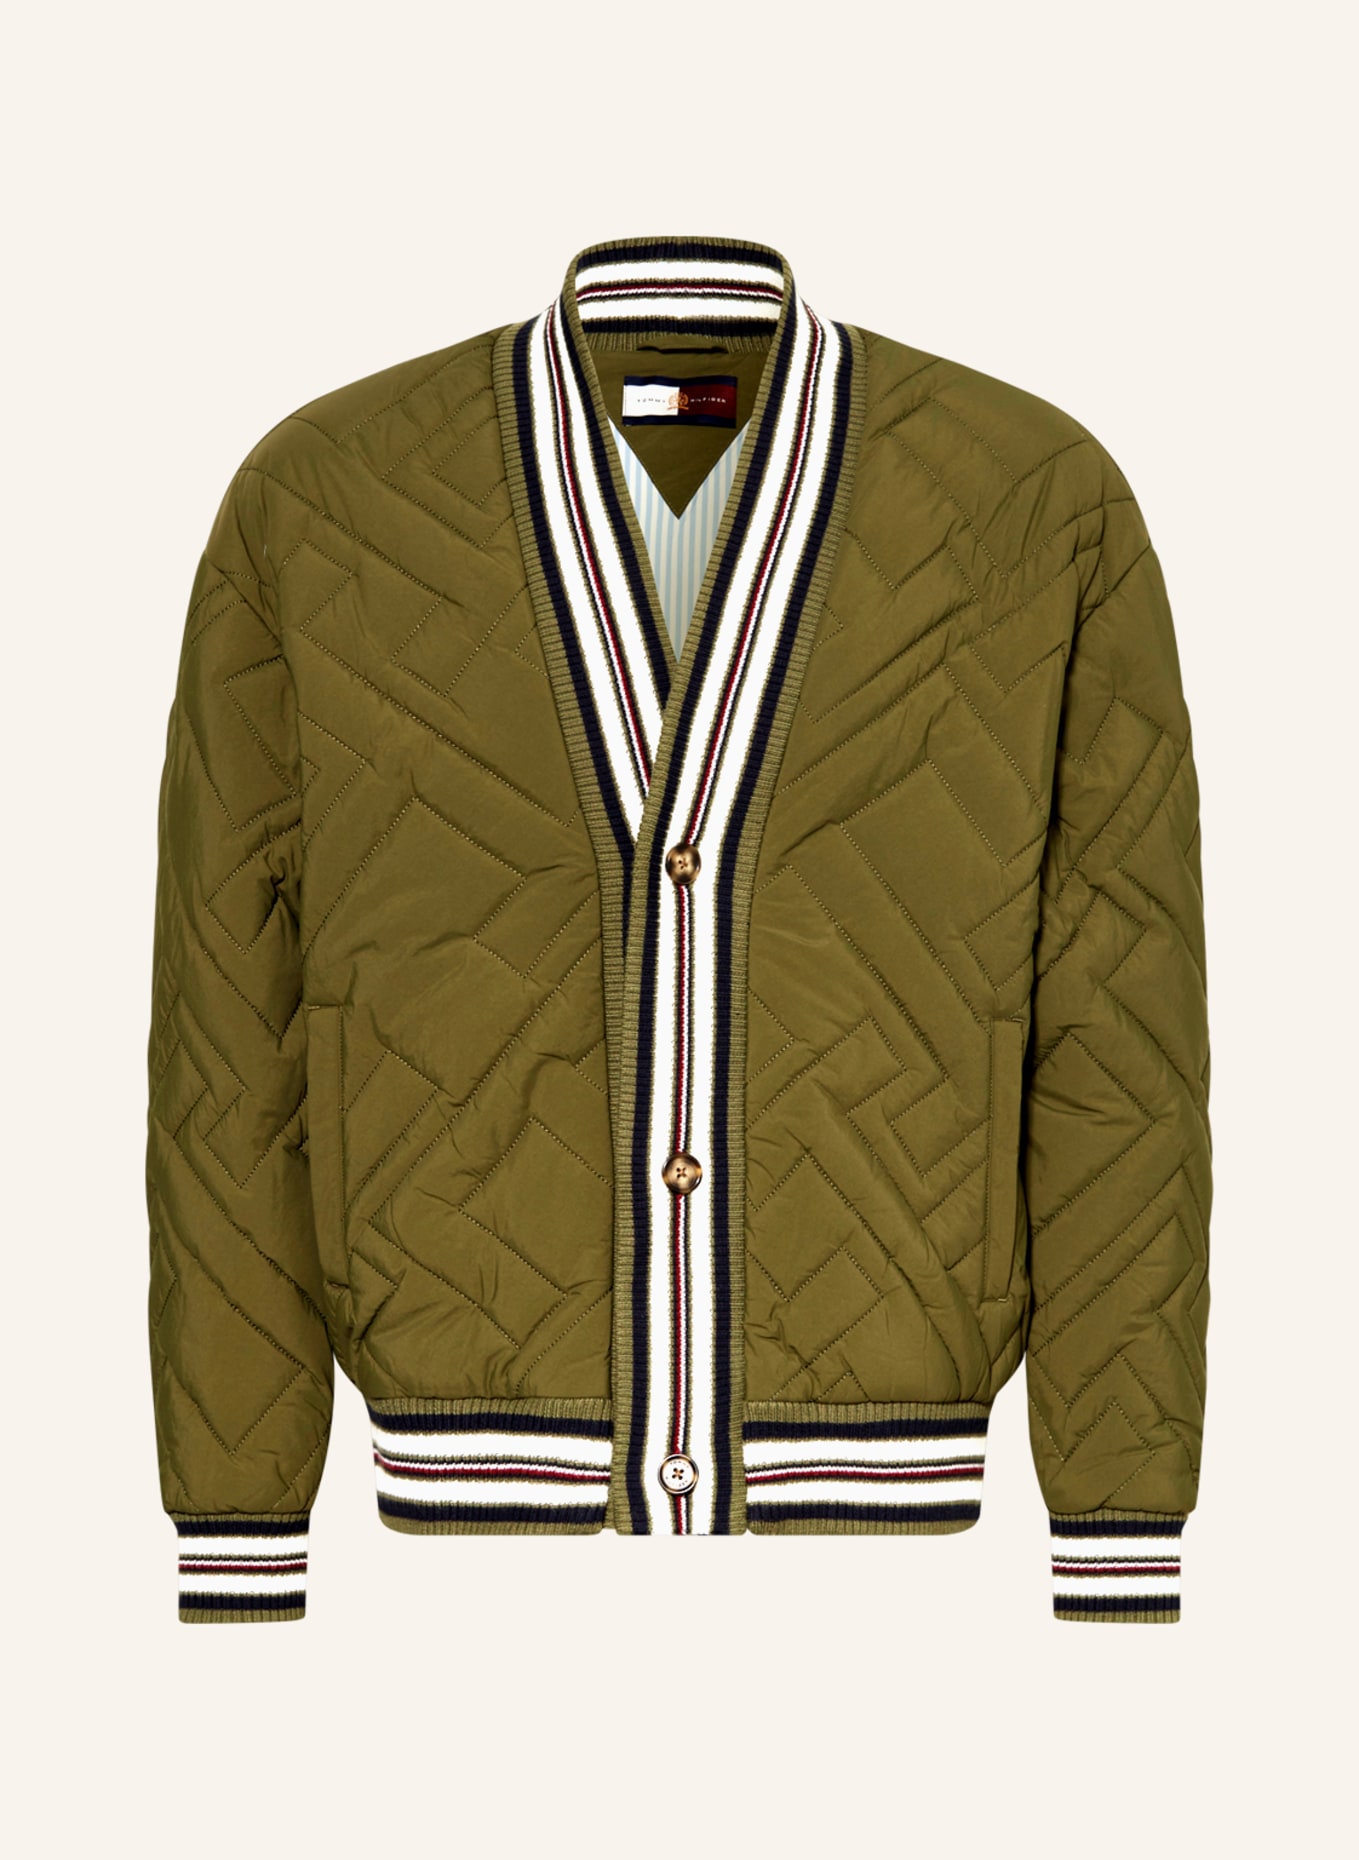 TOMMY HILFIGER Quilted bomber jacket, Color: OLIVE (Image 1)